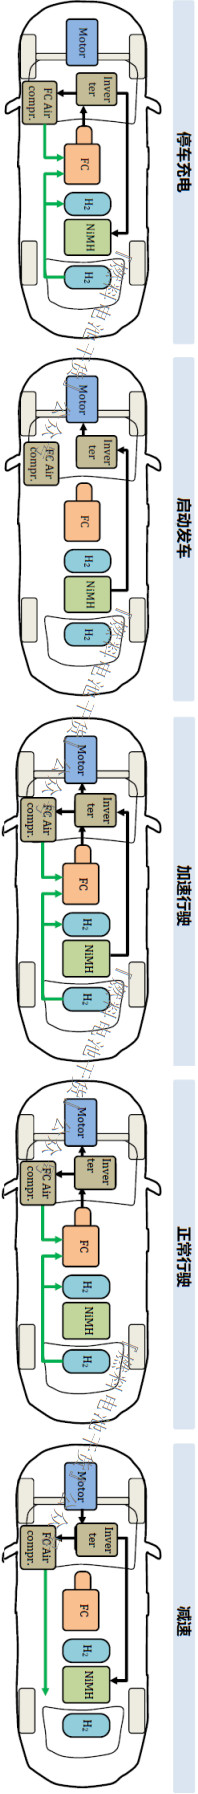 丰田Mirai燃料电池系统氢喷射器工作状态分析